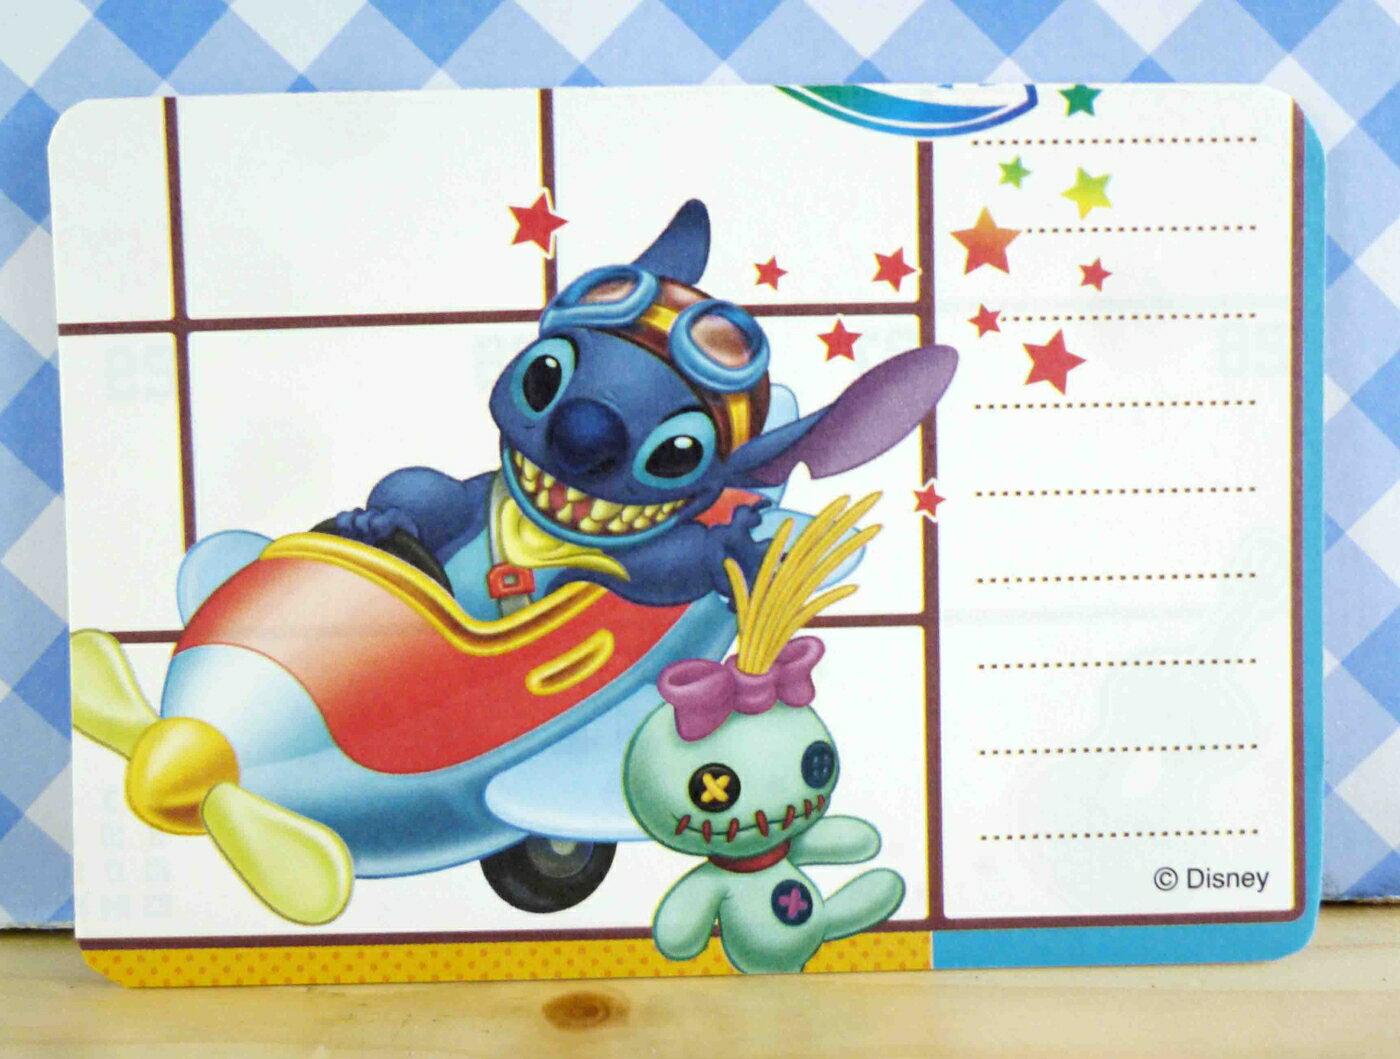 【震撼精品百貨】Stitch 星際寶貝史迪奇 卡片-開飛機 震撼日式精品百貨